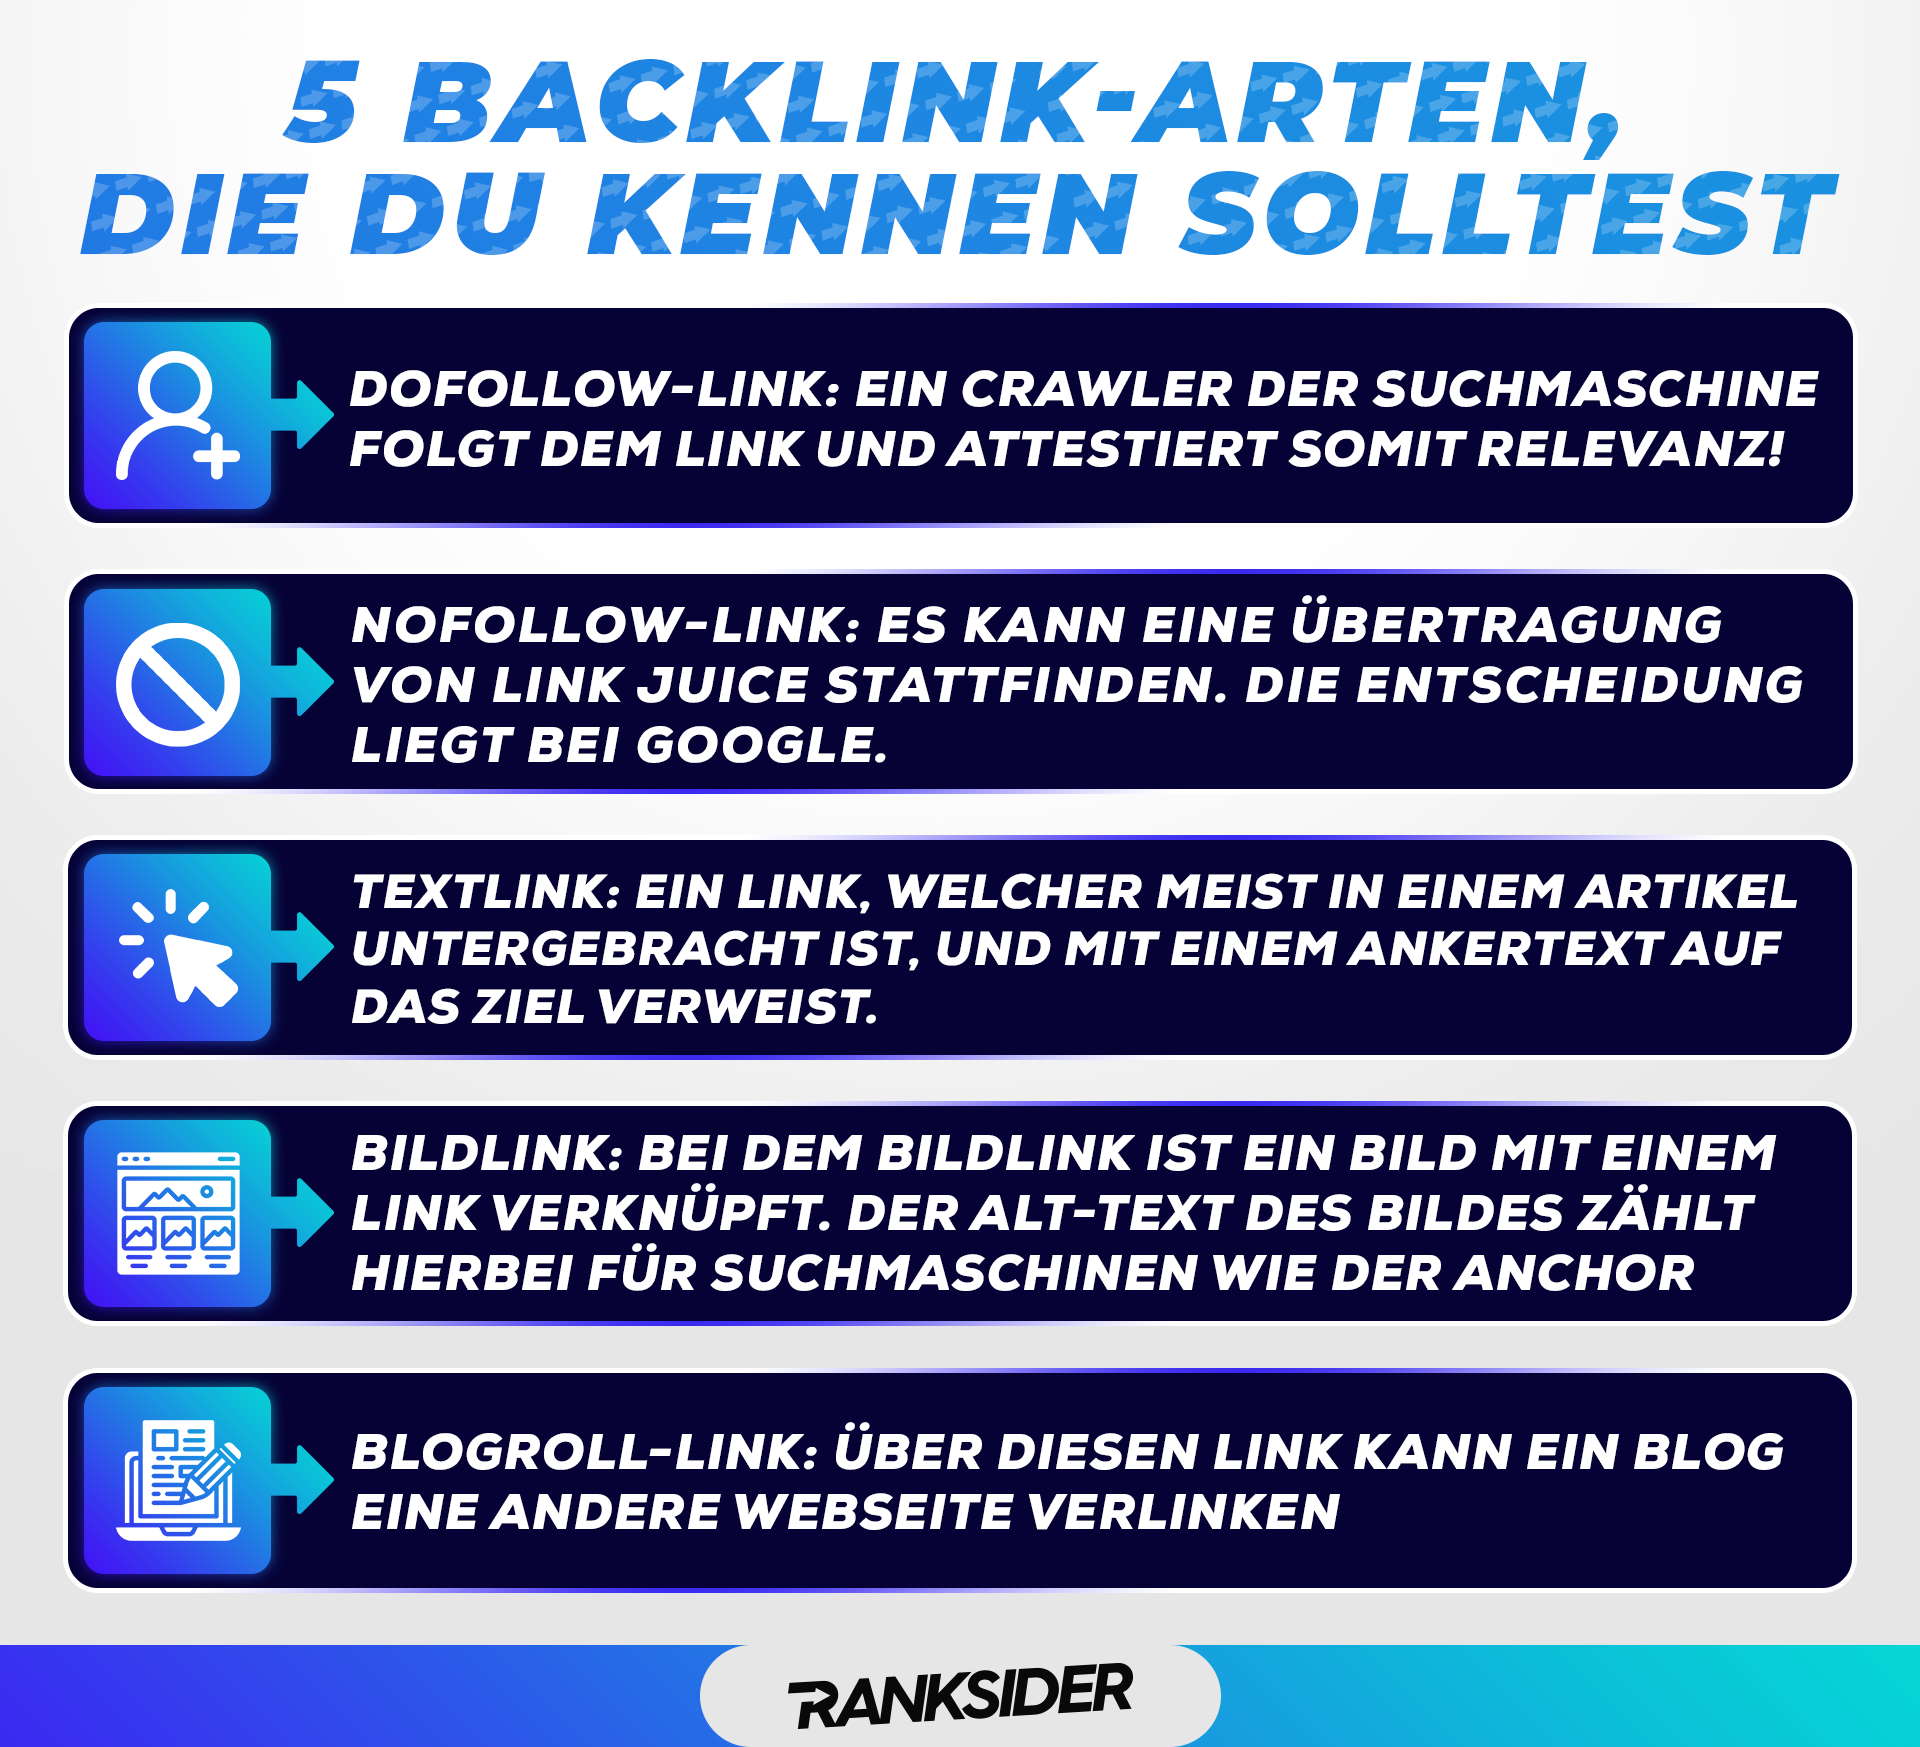 Backlink-Arten, Backlink, Backlinks, 